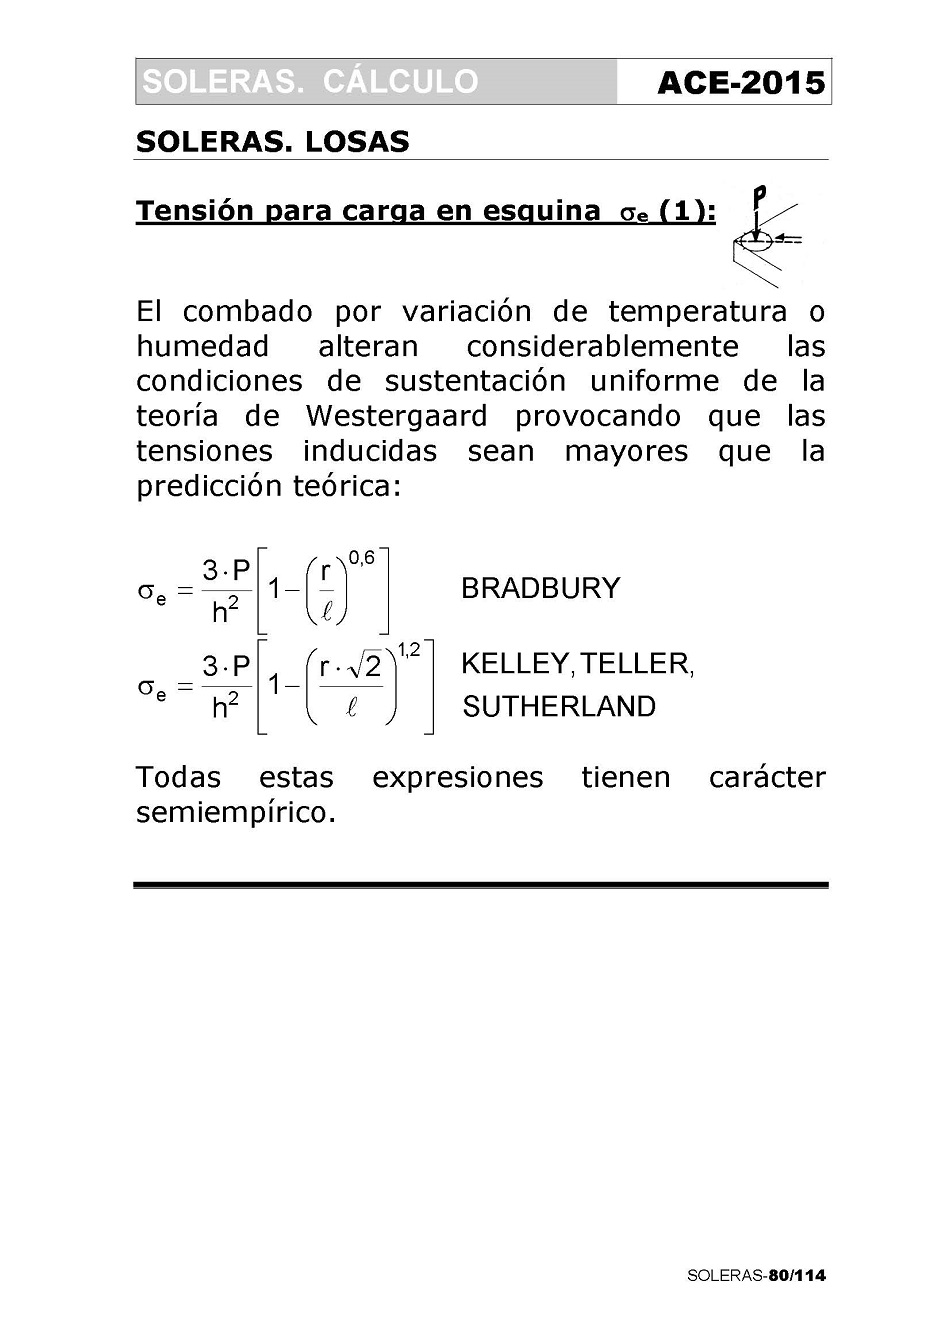 Cálculo de Soleras de Hormigón. Página 80